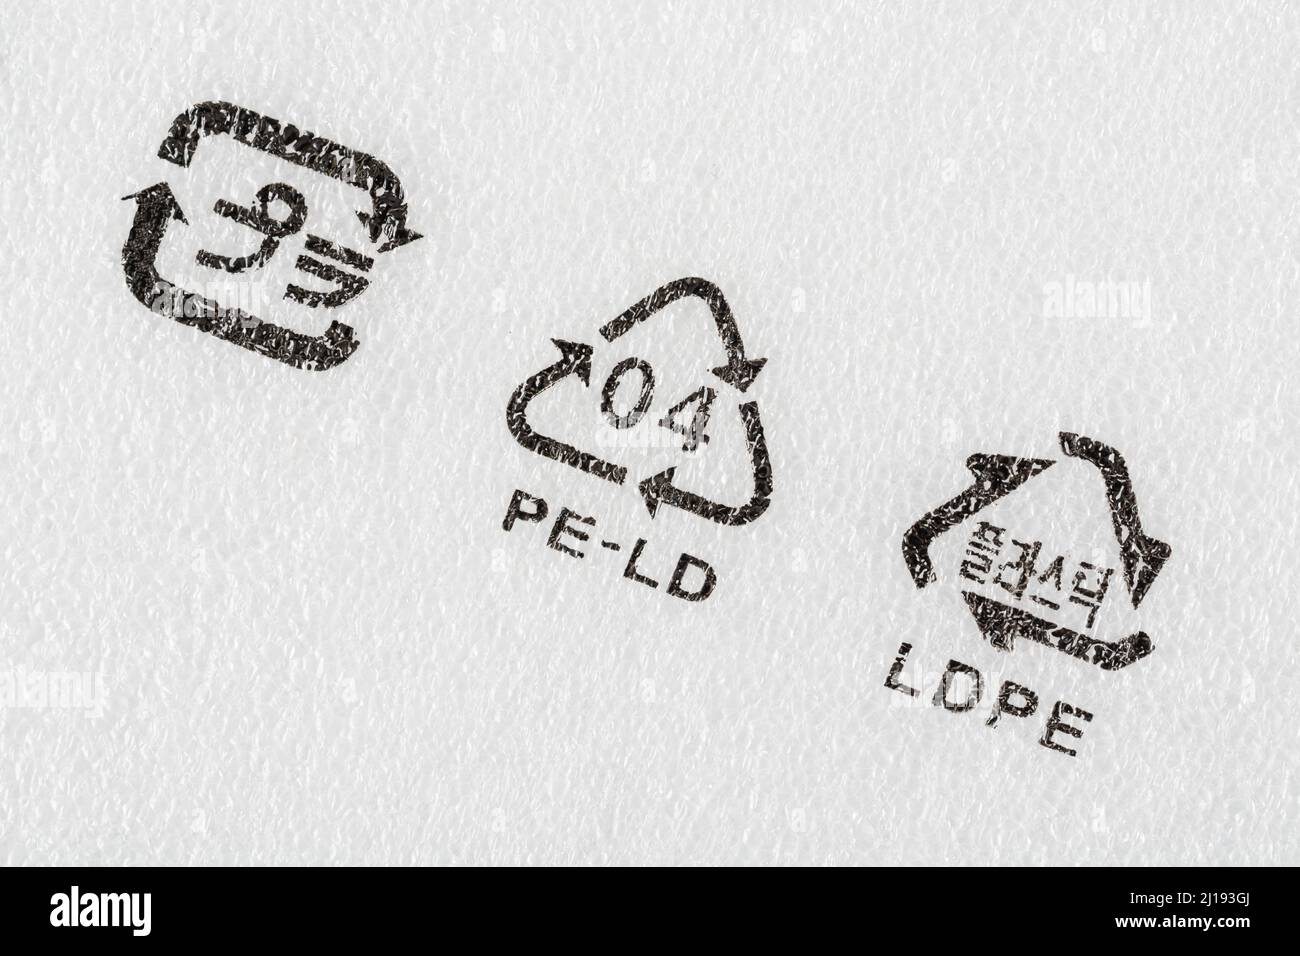 Nahaufnahme des LDPE-Symbols zur Harzkennzeichnung Code 4 Kunststoffe - hier gedruckt auf einer starren Vielzahl von Schaumstoffverpackungen. Stockfoto